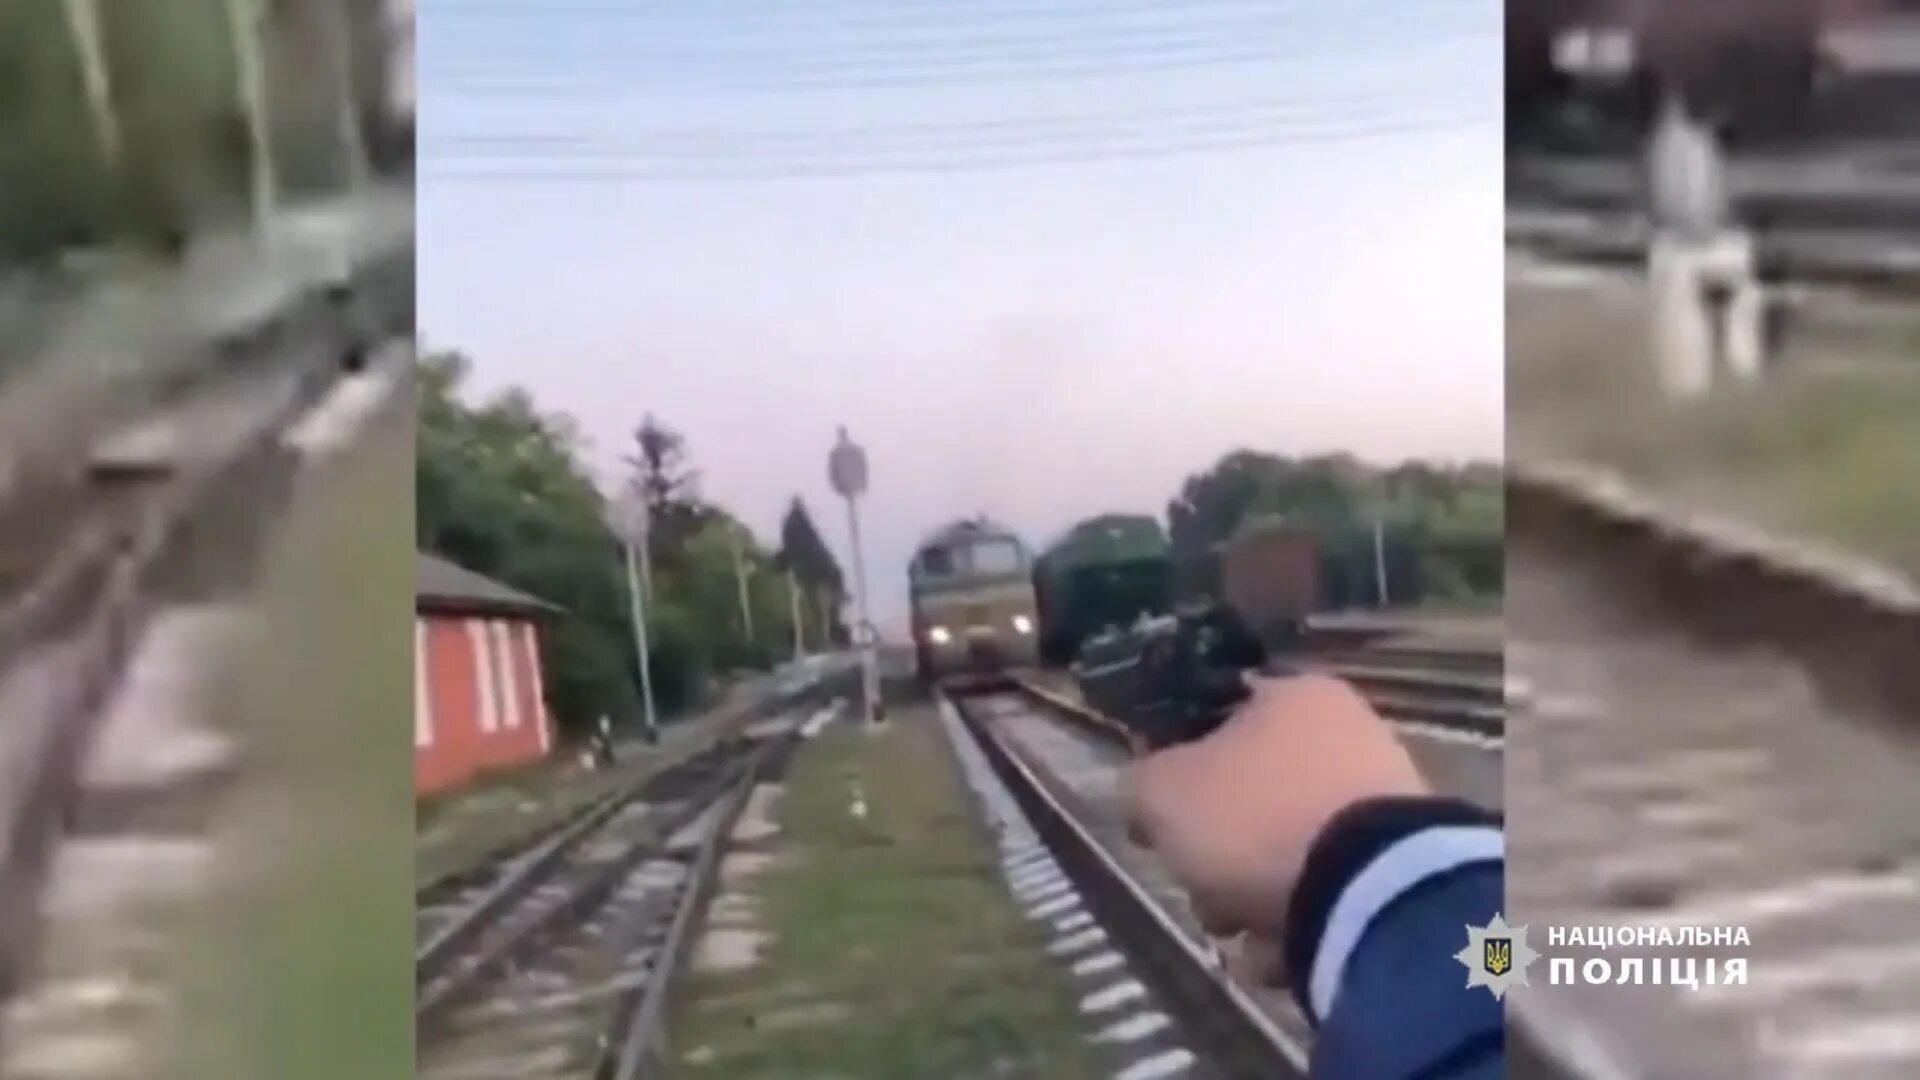 Обстрел электрички. Обстреляли поезд. Поезд который исчез. Обстрел поезда сегодня.